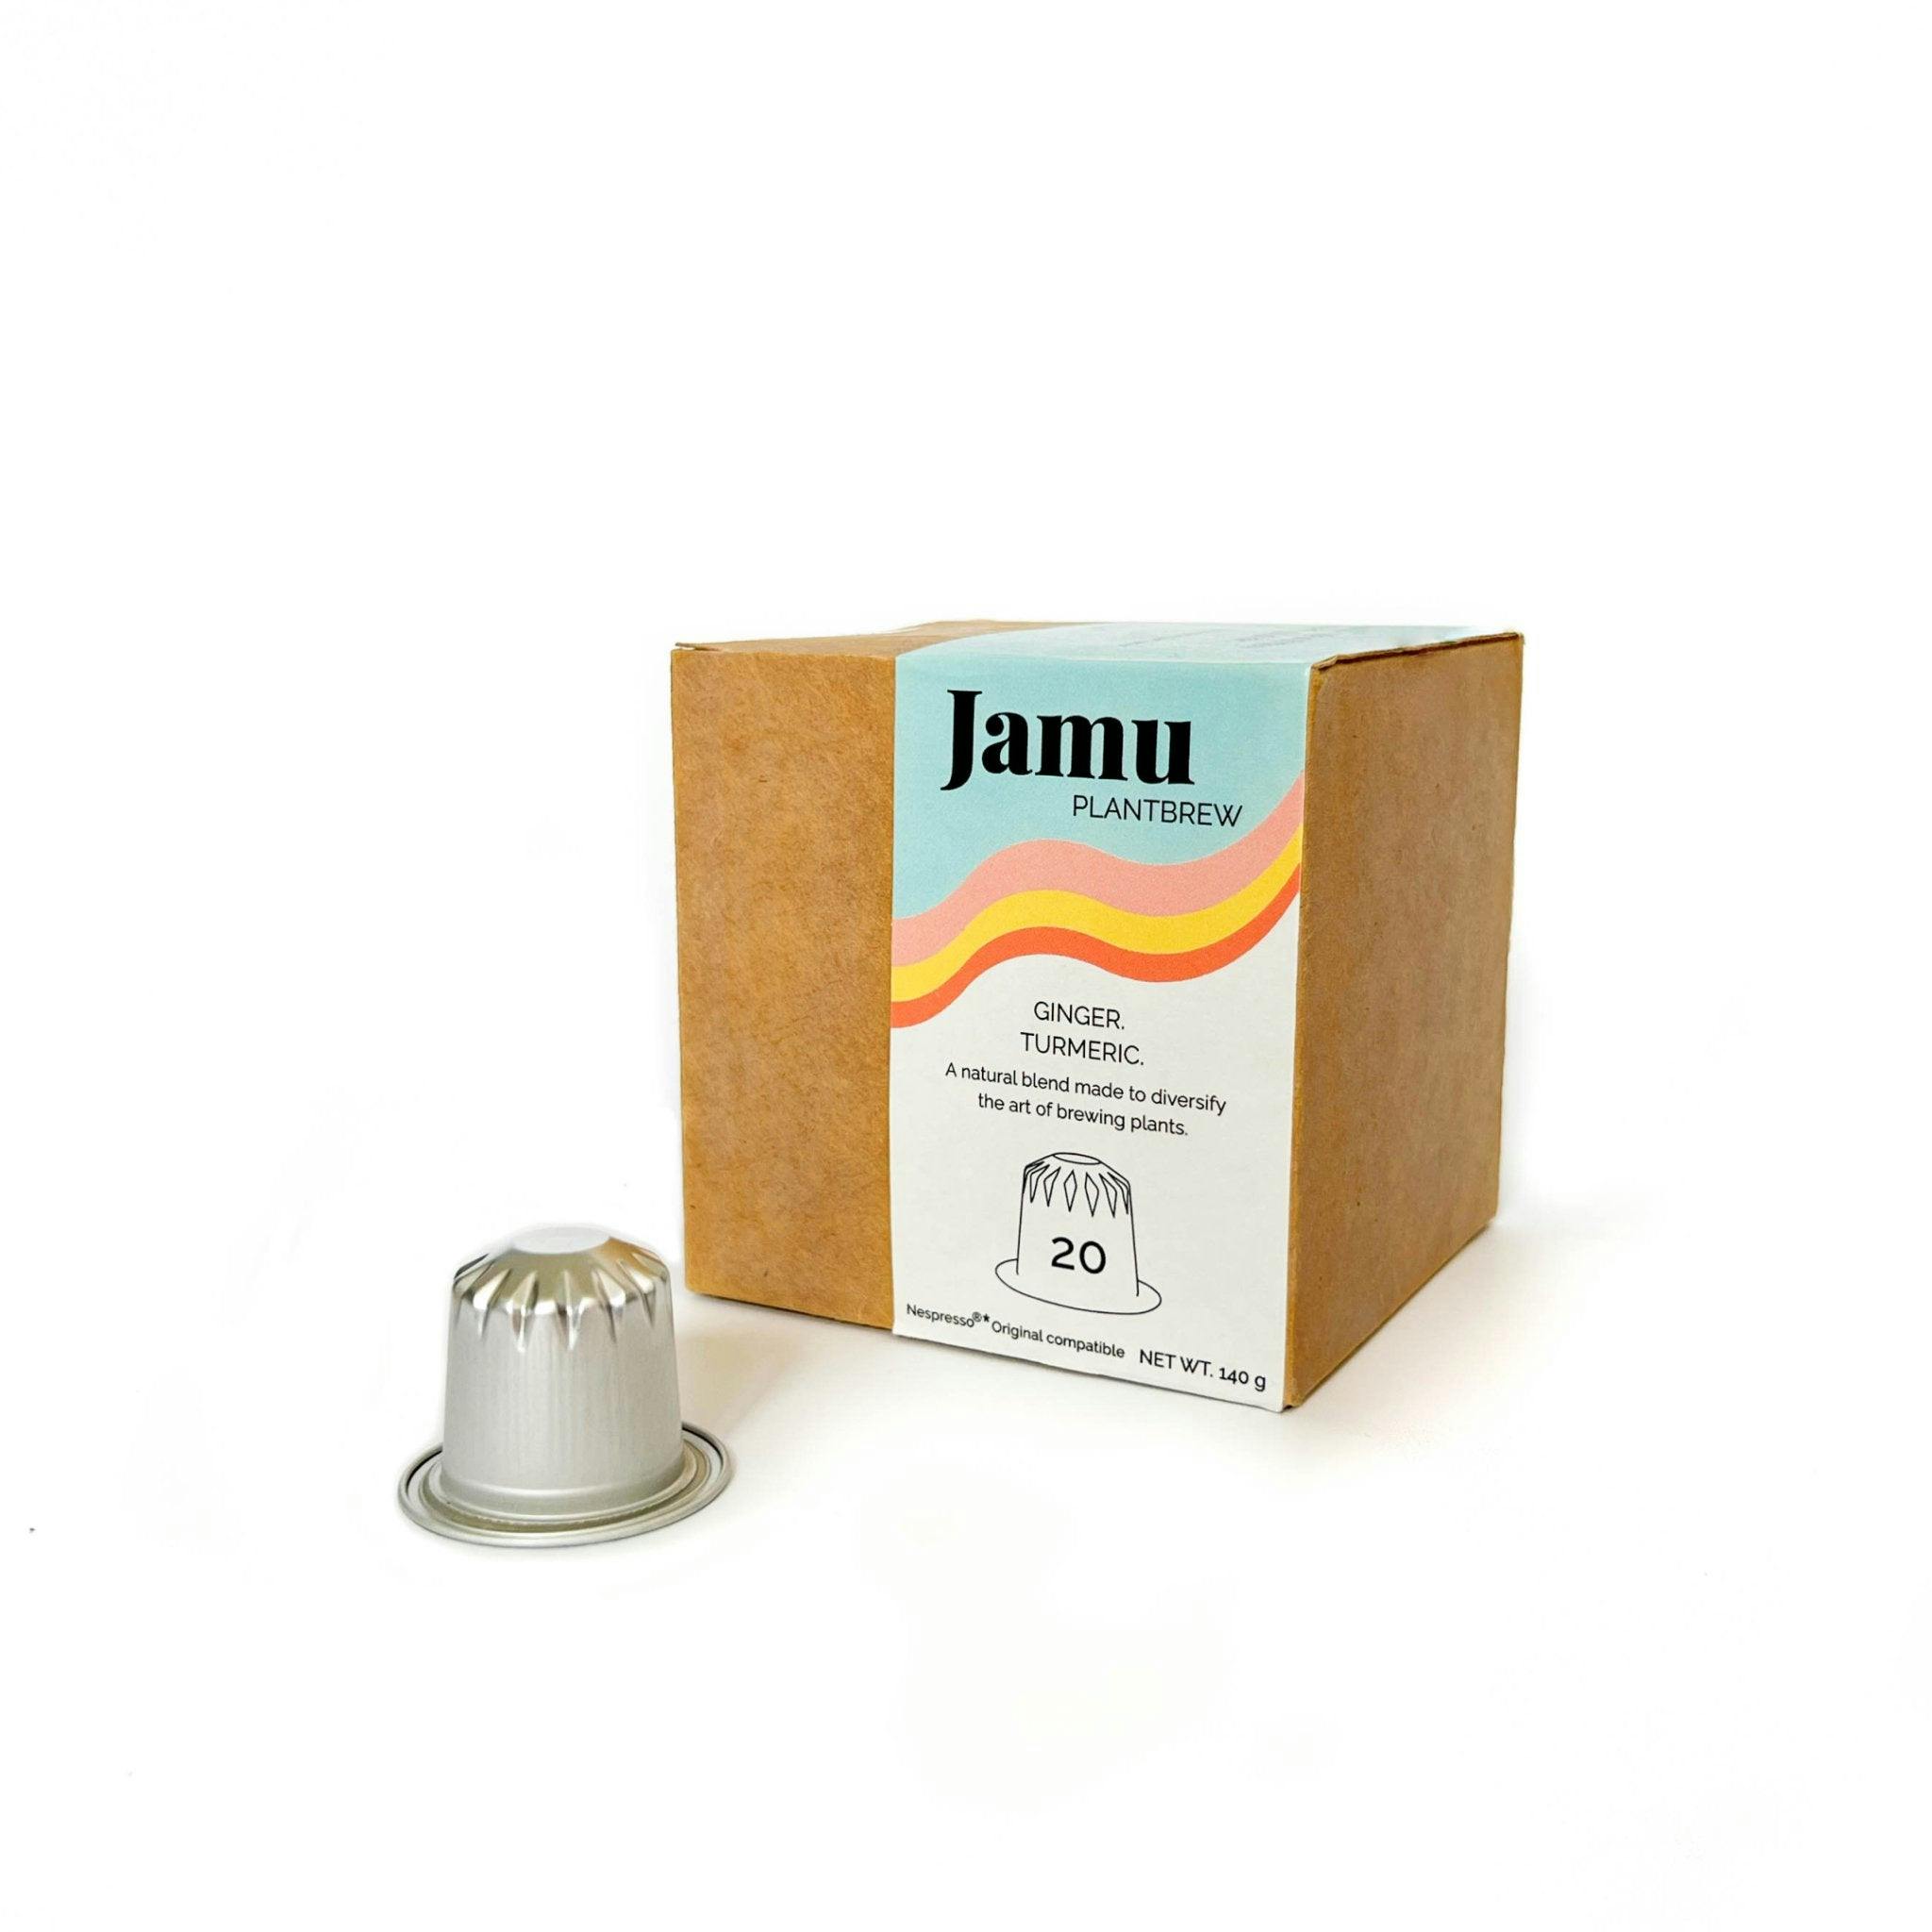 Jamu PlantBrew, Gingembre & Curcuma (20 gélules), produit artisanal en vente directe en Suisse